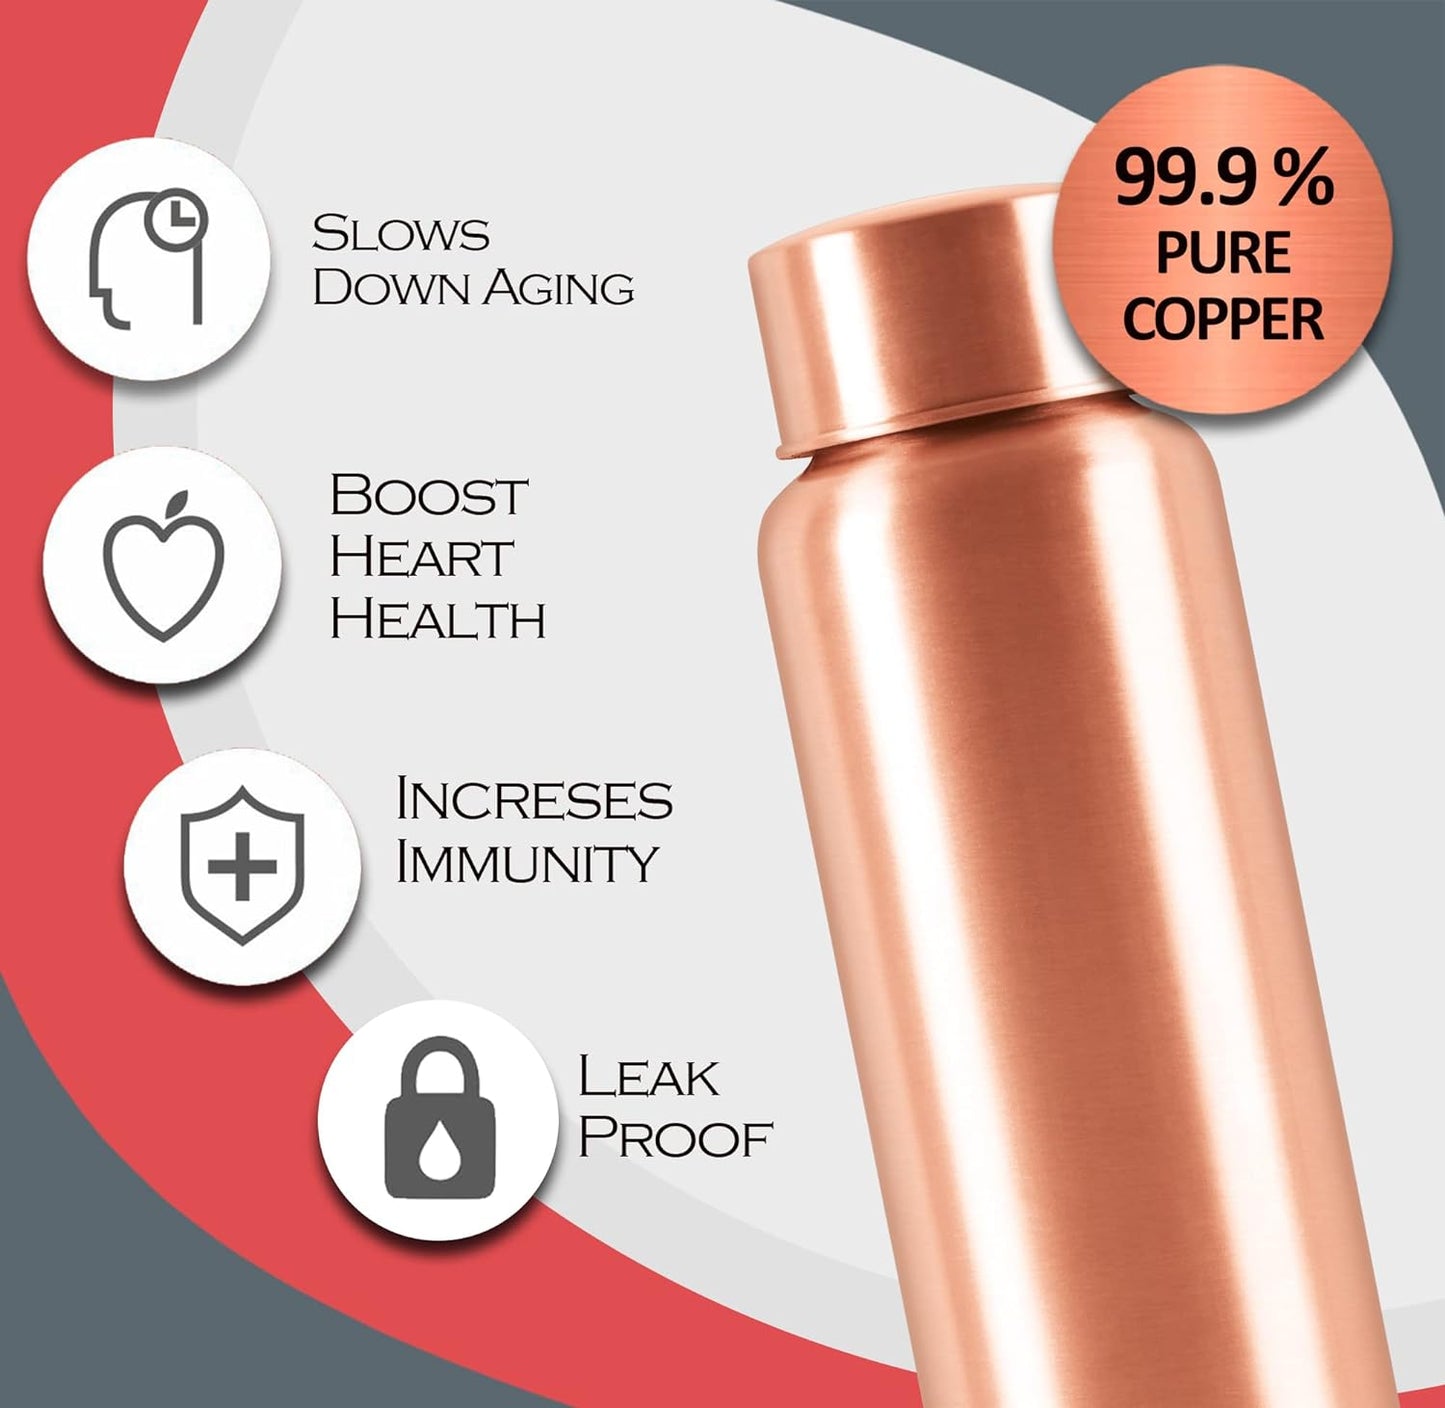 Milton Copper Water bottle 1 litre